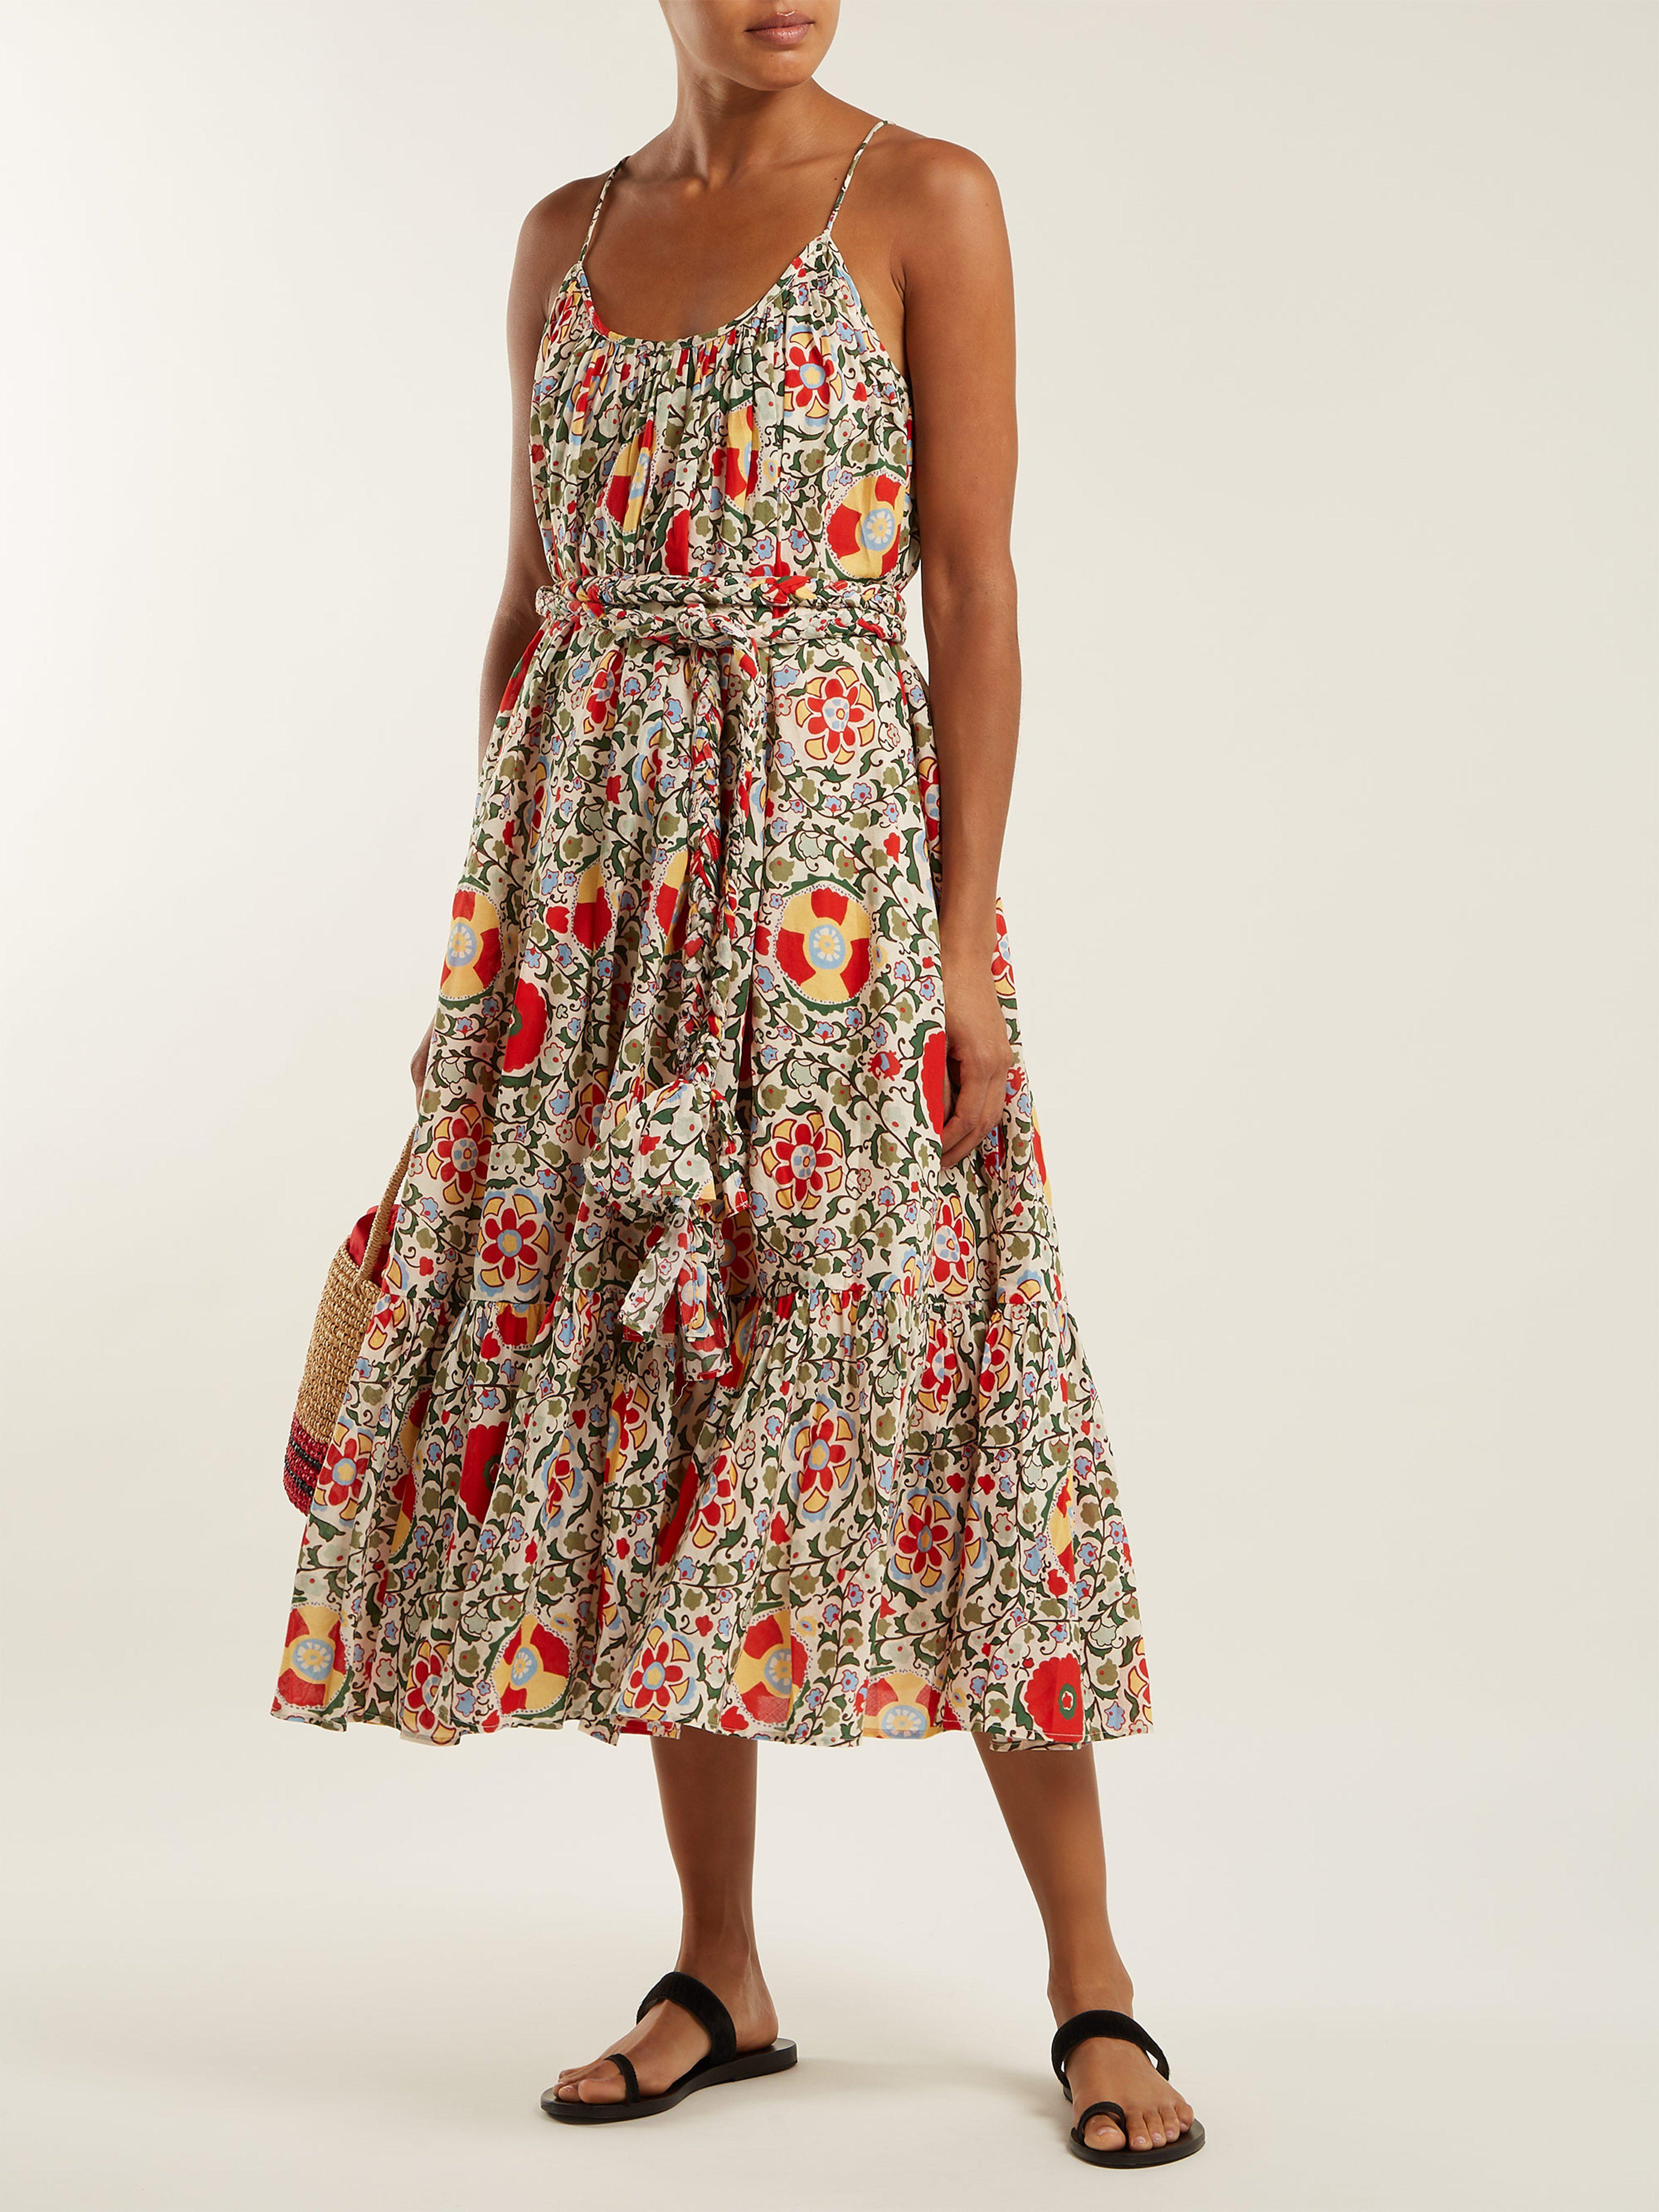 RHODE Lea Floral Print Cotton Dress - Lyst